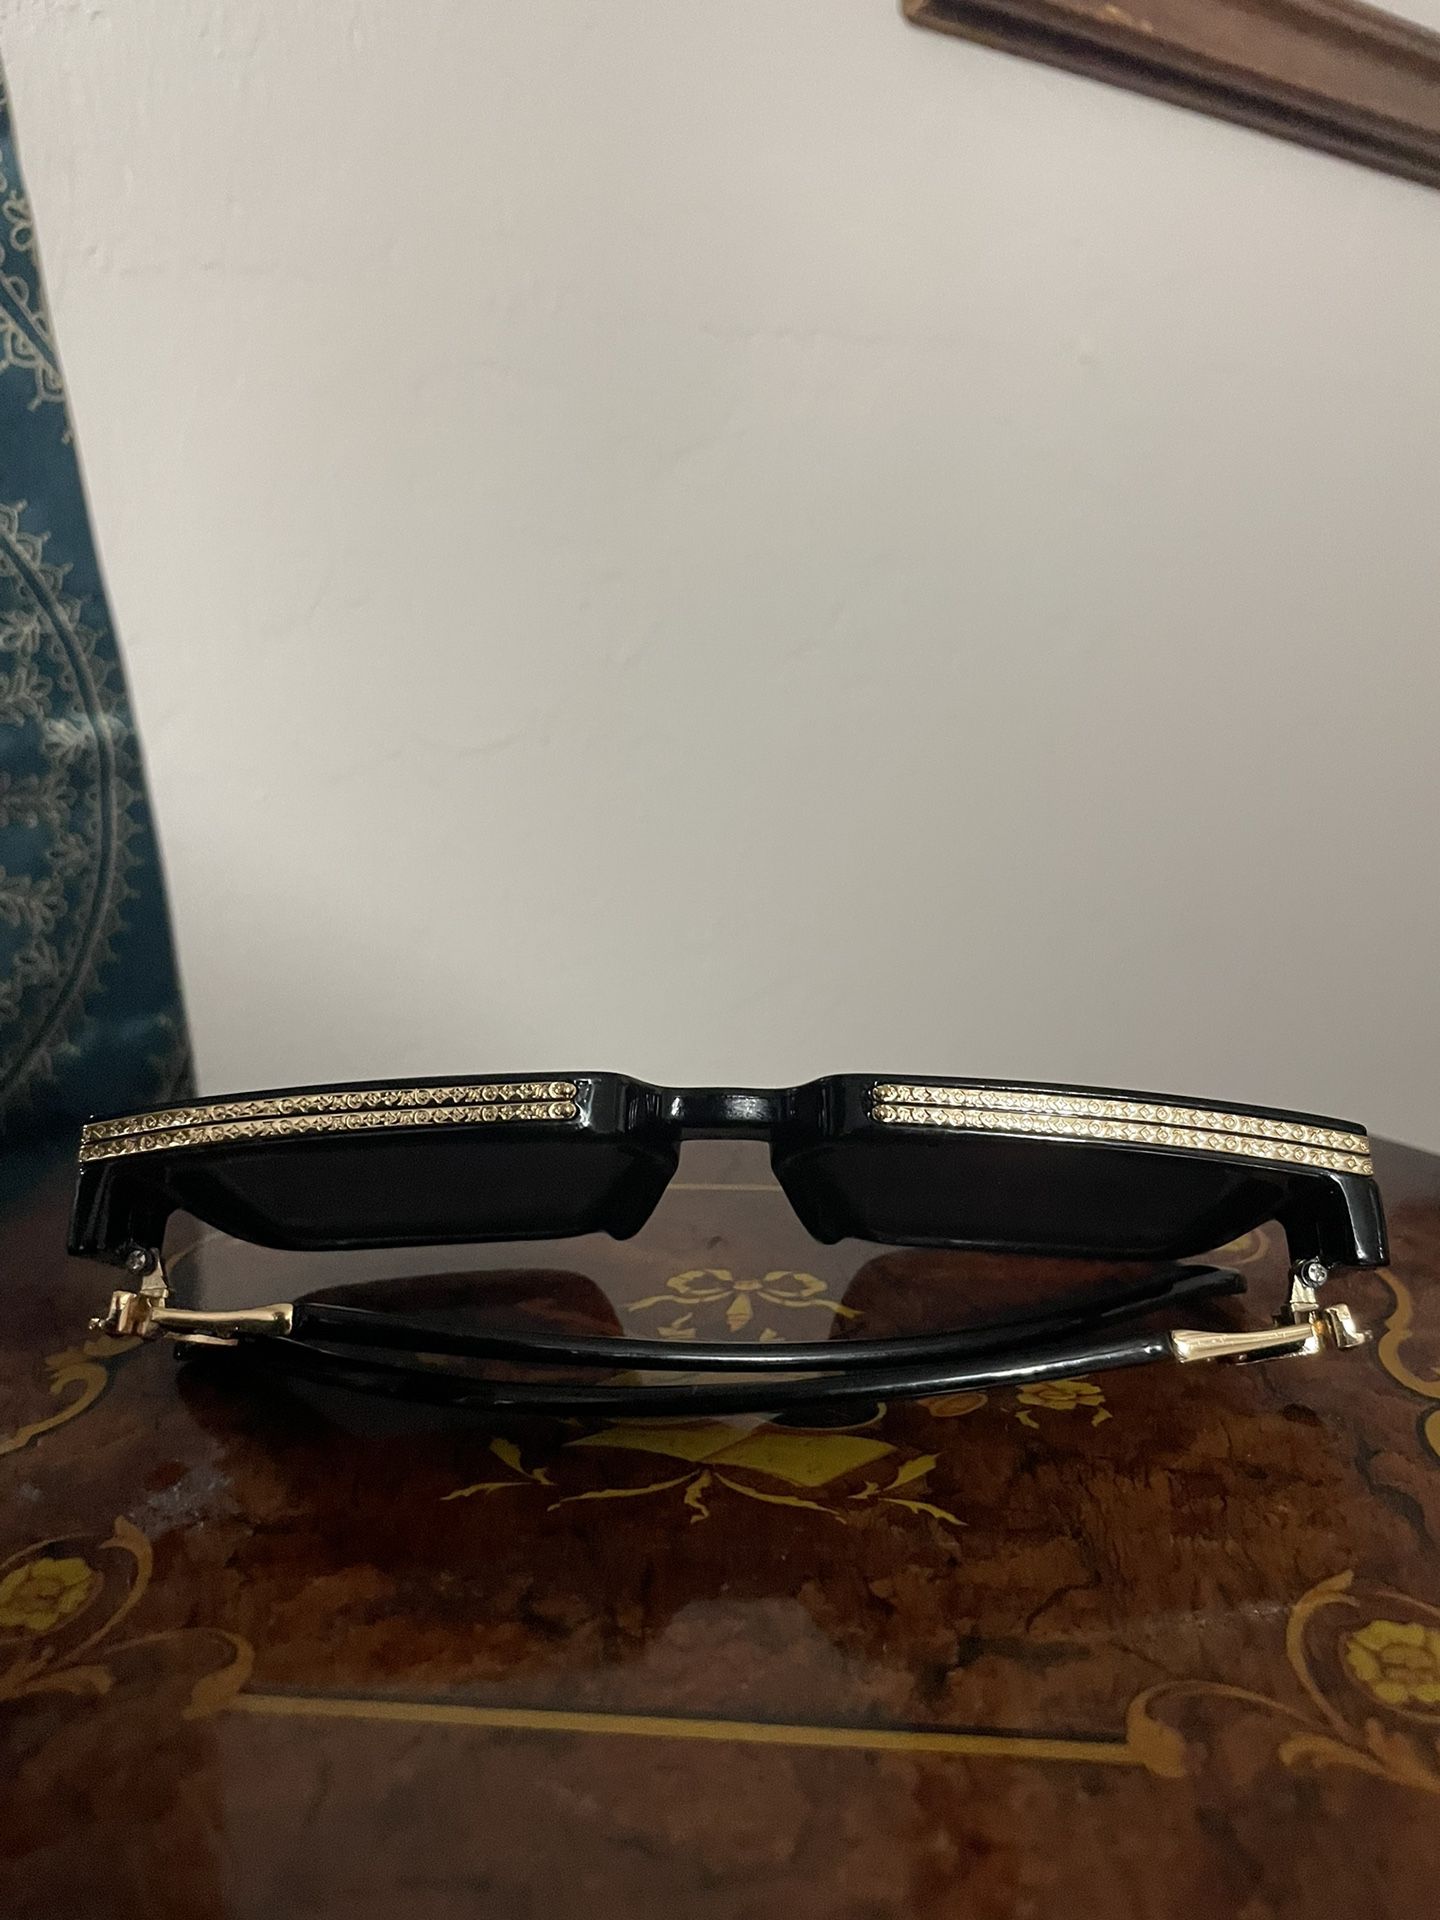 Louis Vuitton Glasses 